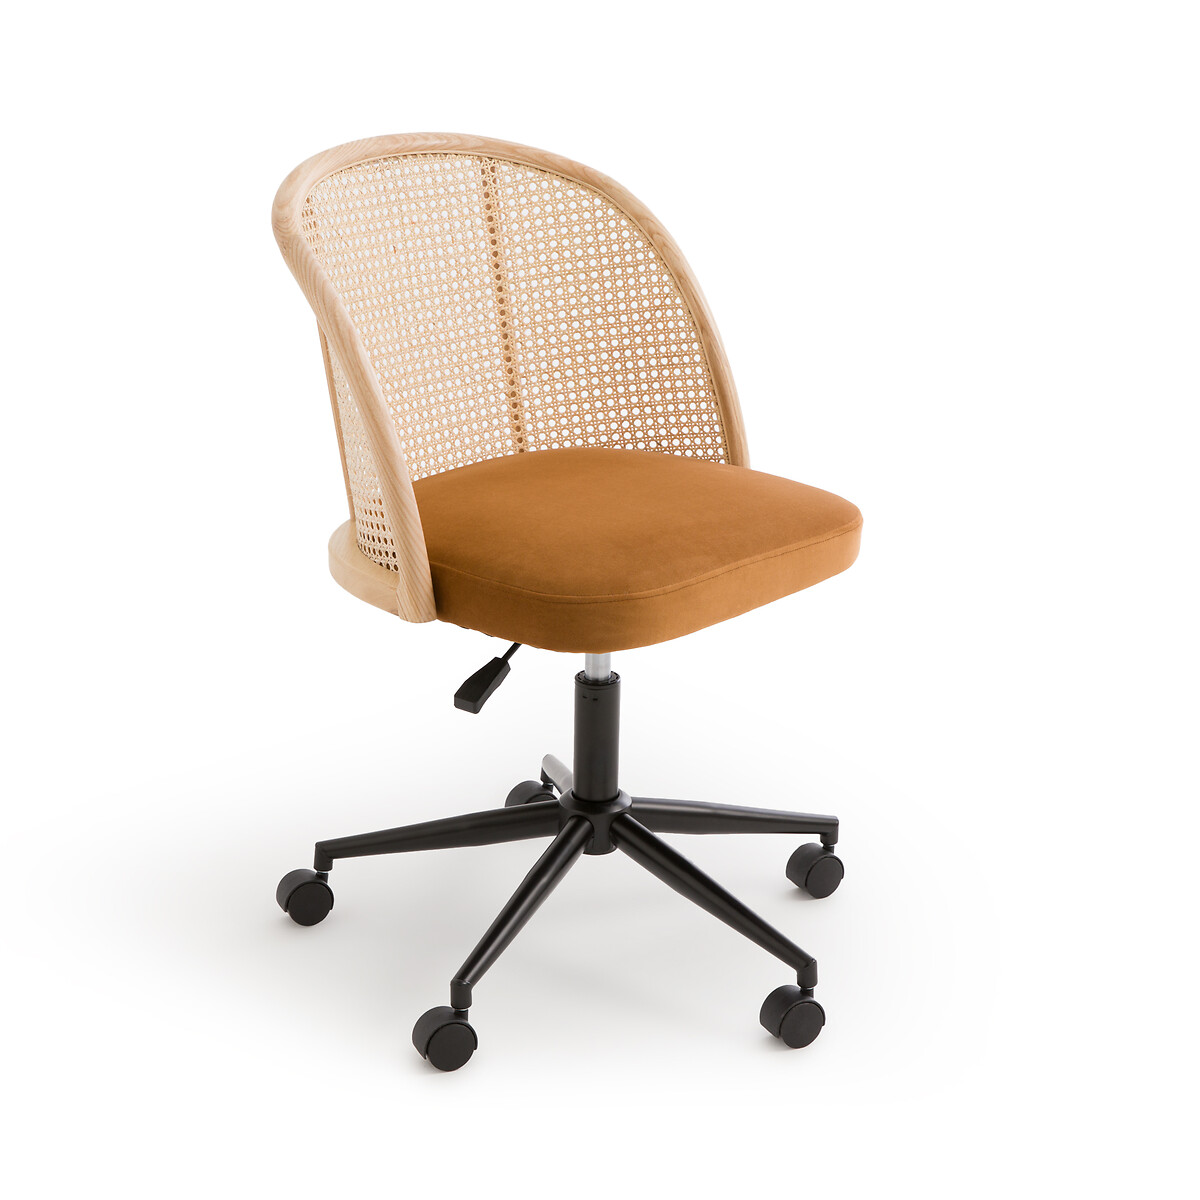 Кресло офисное из велюра и плетеного ротанга Maora единый размер желтый кресло для столовой из плетеного ротанга и металла melawi единый размер бежевый